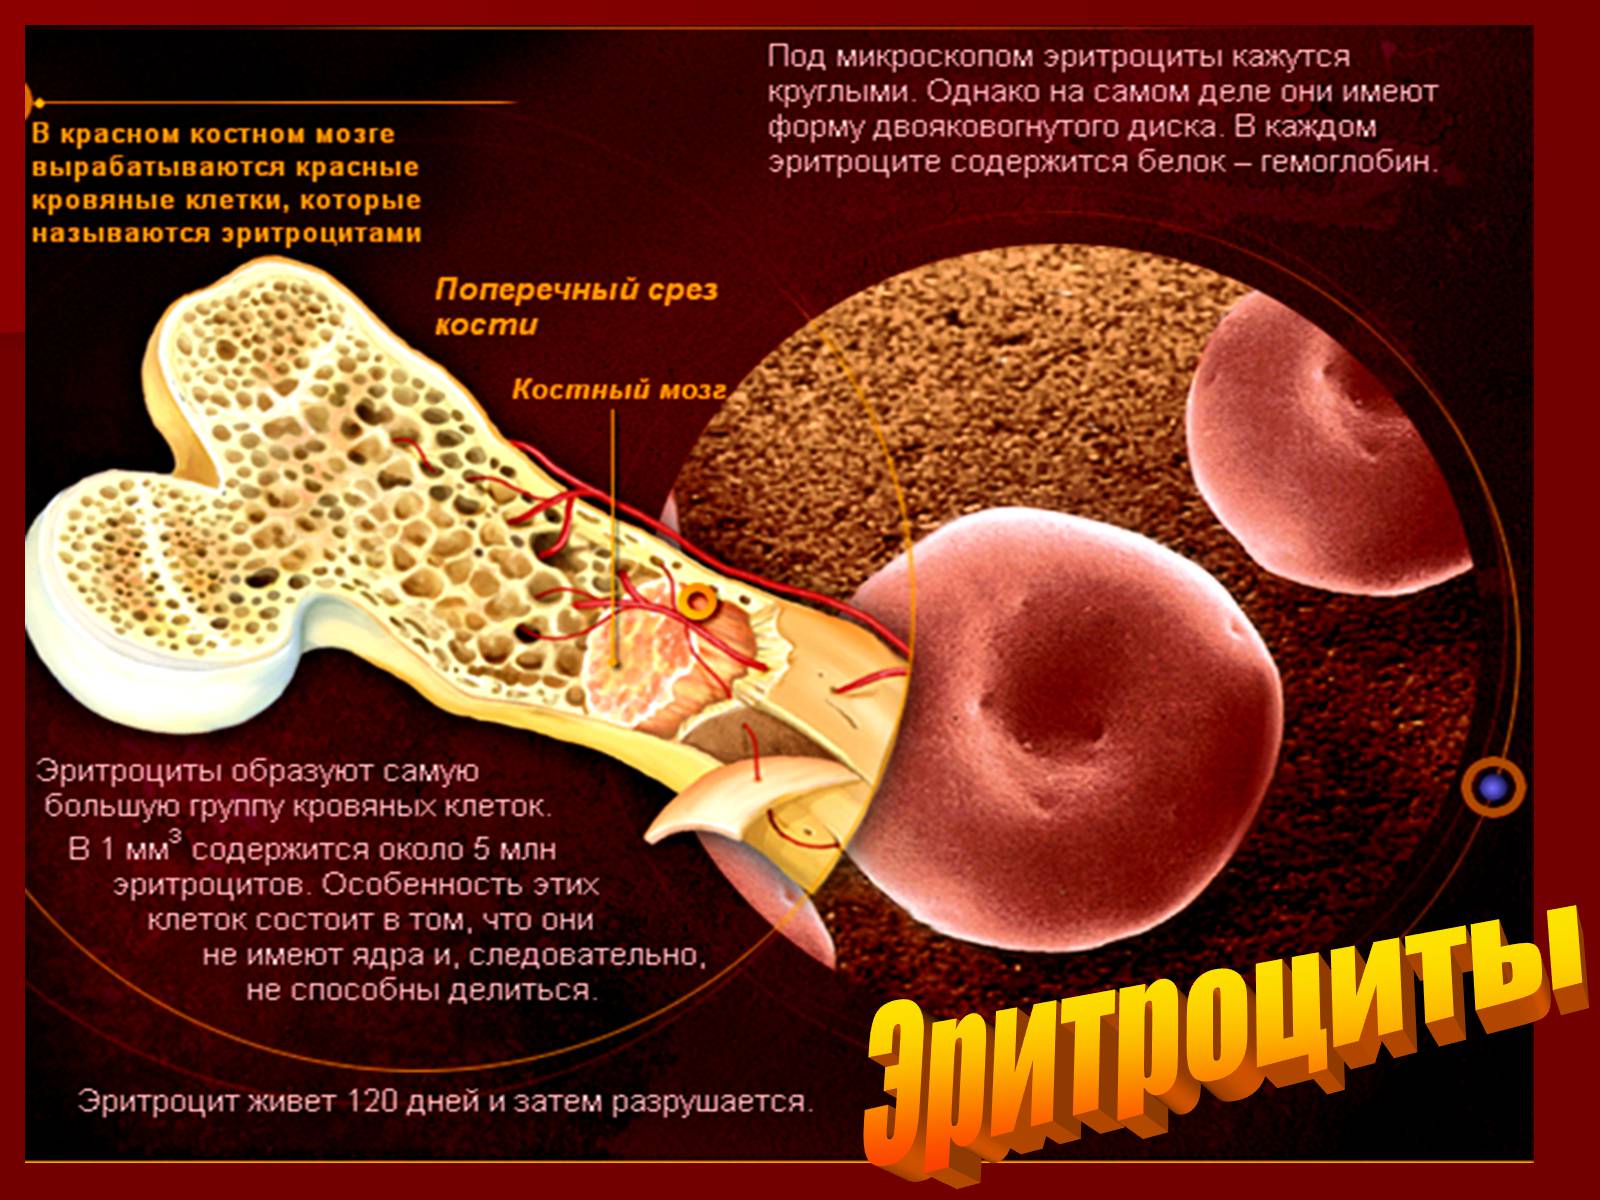 Где вырабатывается кровь. Красный костный мозг эритроциты. Эритроциты в костном мозге. Что вырабатывает красный костный мозг. Клетки костного мозга.